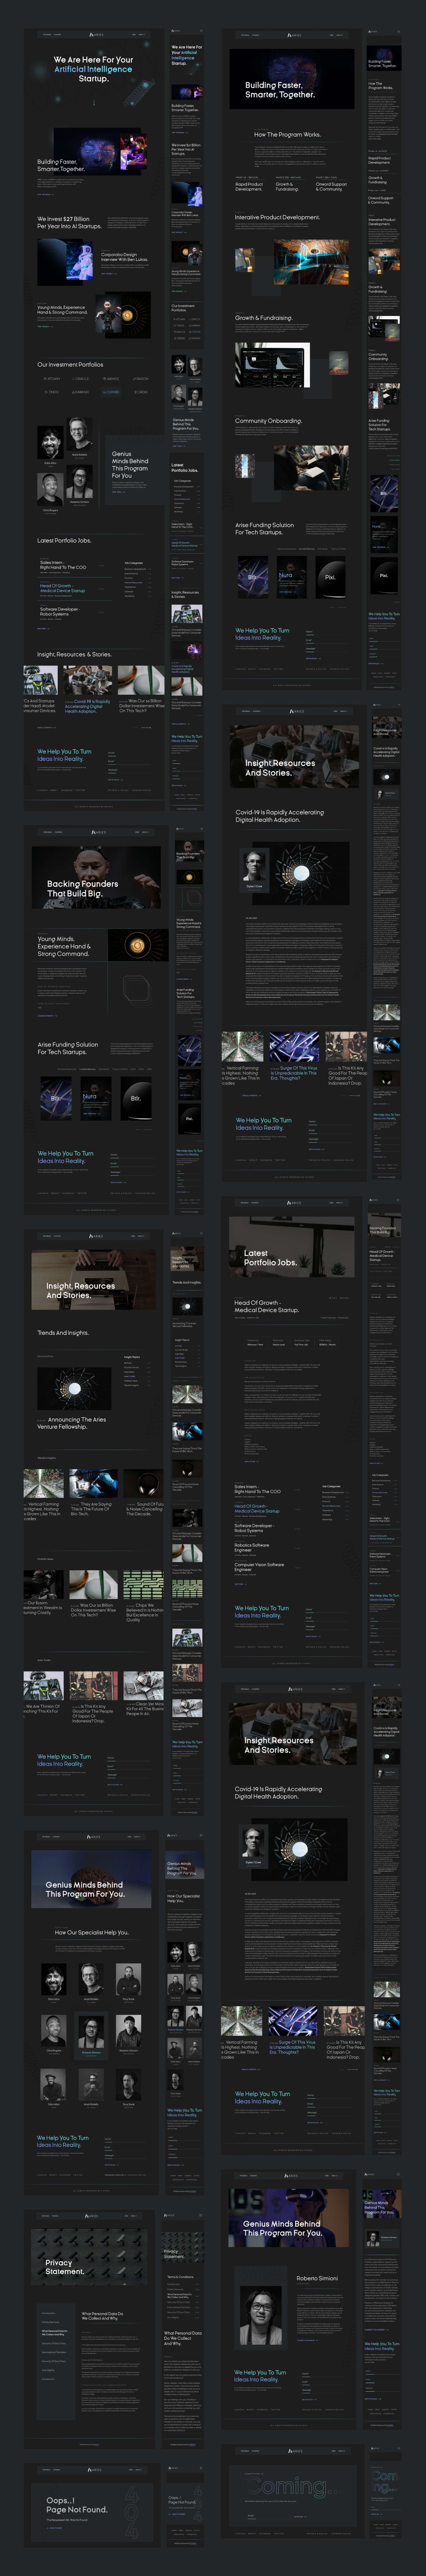 暗色系响应式科技品牌设计企业网站WEB UI界面设计套件 .fig素材